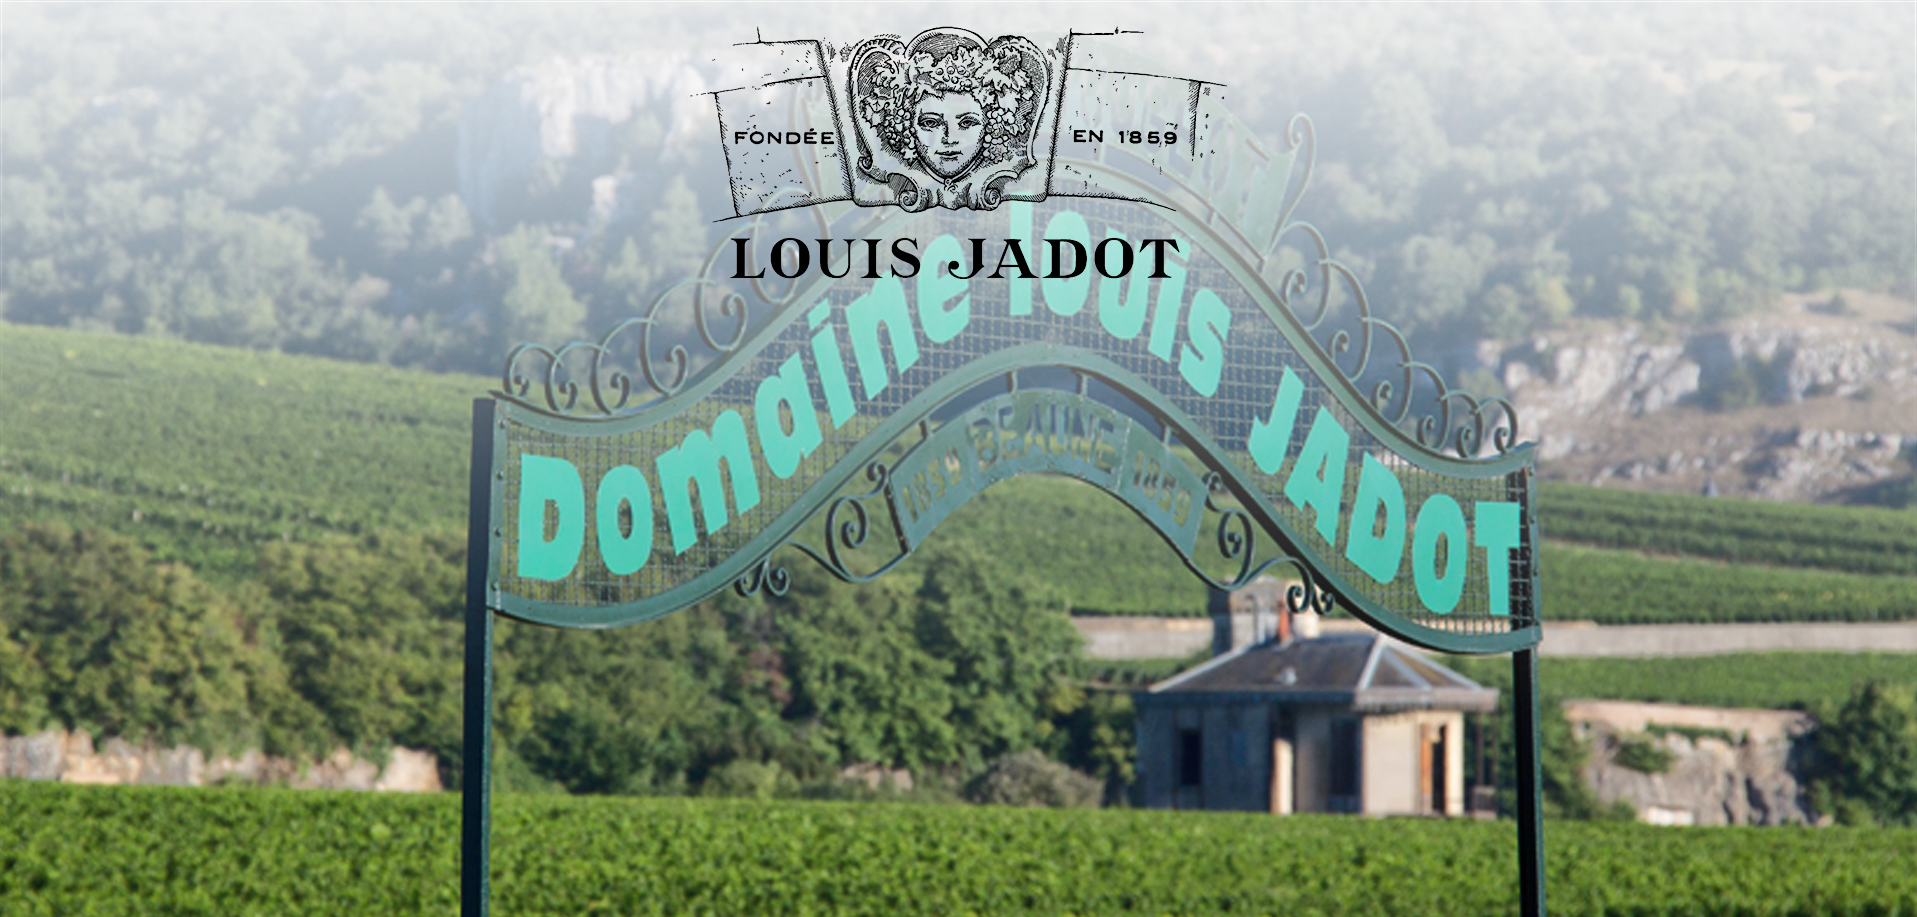 Louis Jadot 2020: Alle ingrediënten voor een onvergetelijke vintage!